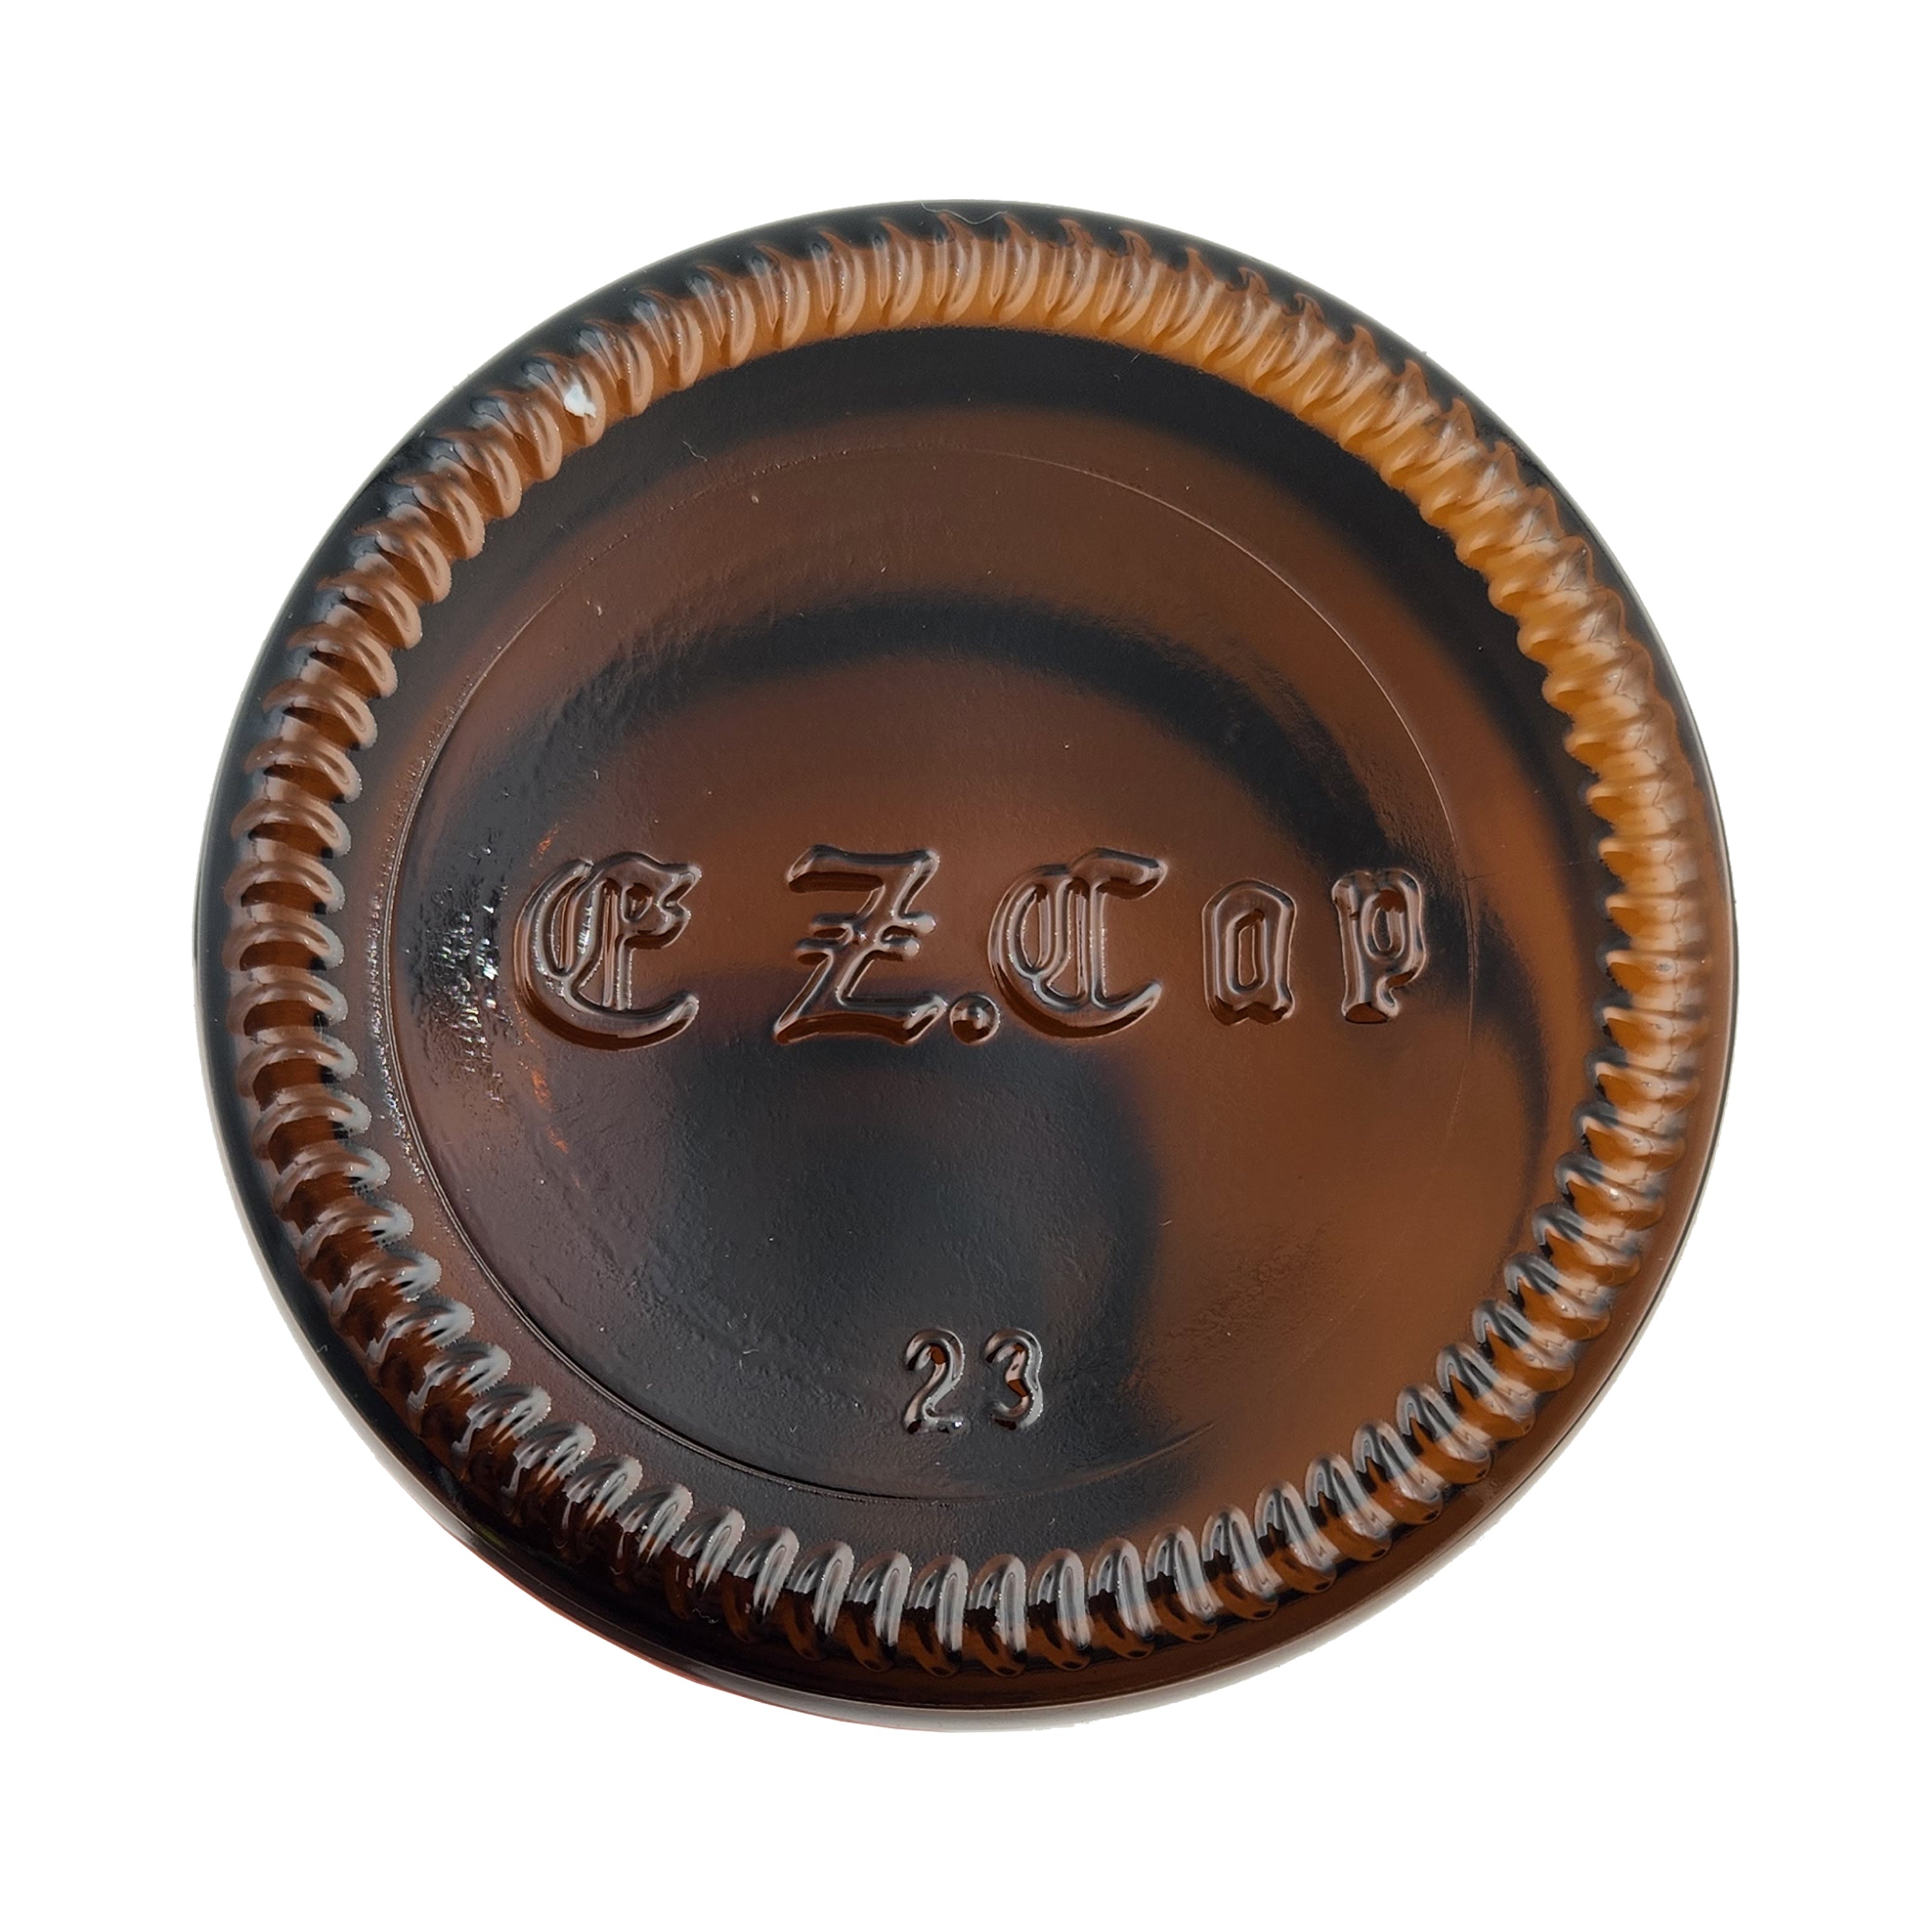 Cobalt EZ Cap Bottles w/ Swing Tops - 16 oz